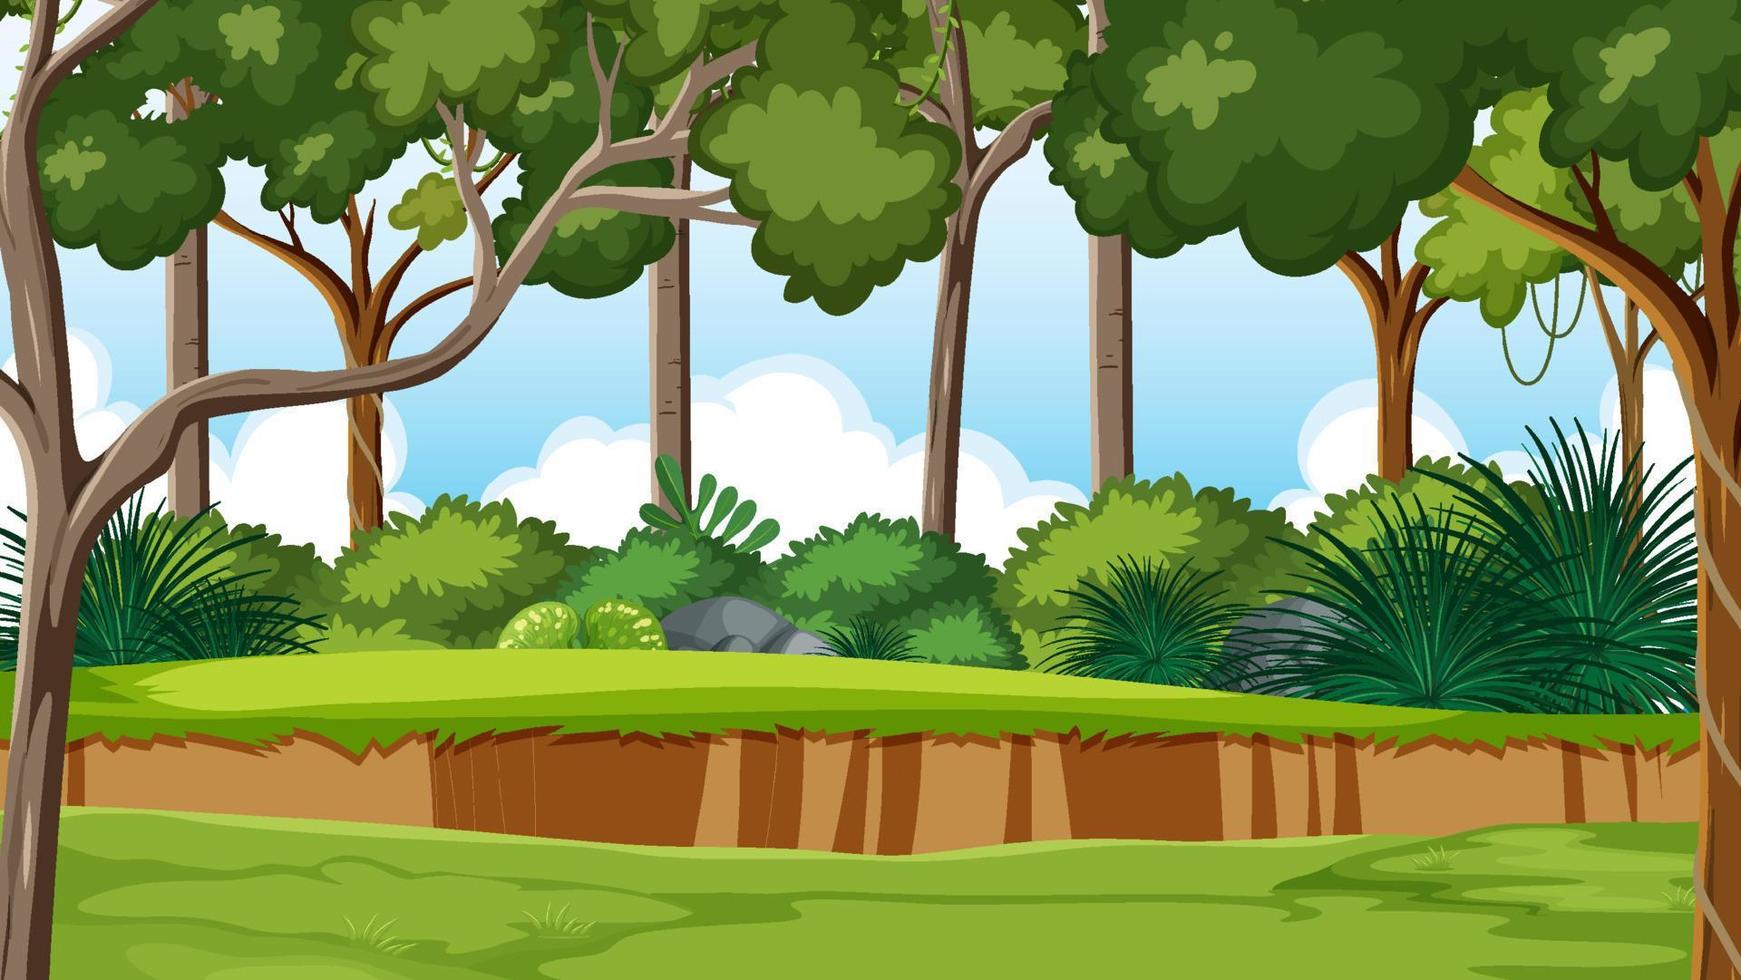 sfondo dell'ambiente della giungla in stile cartone animato vettore